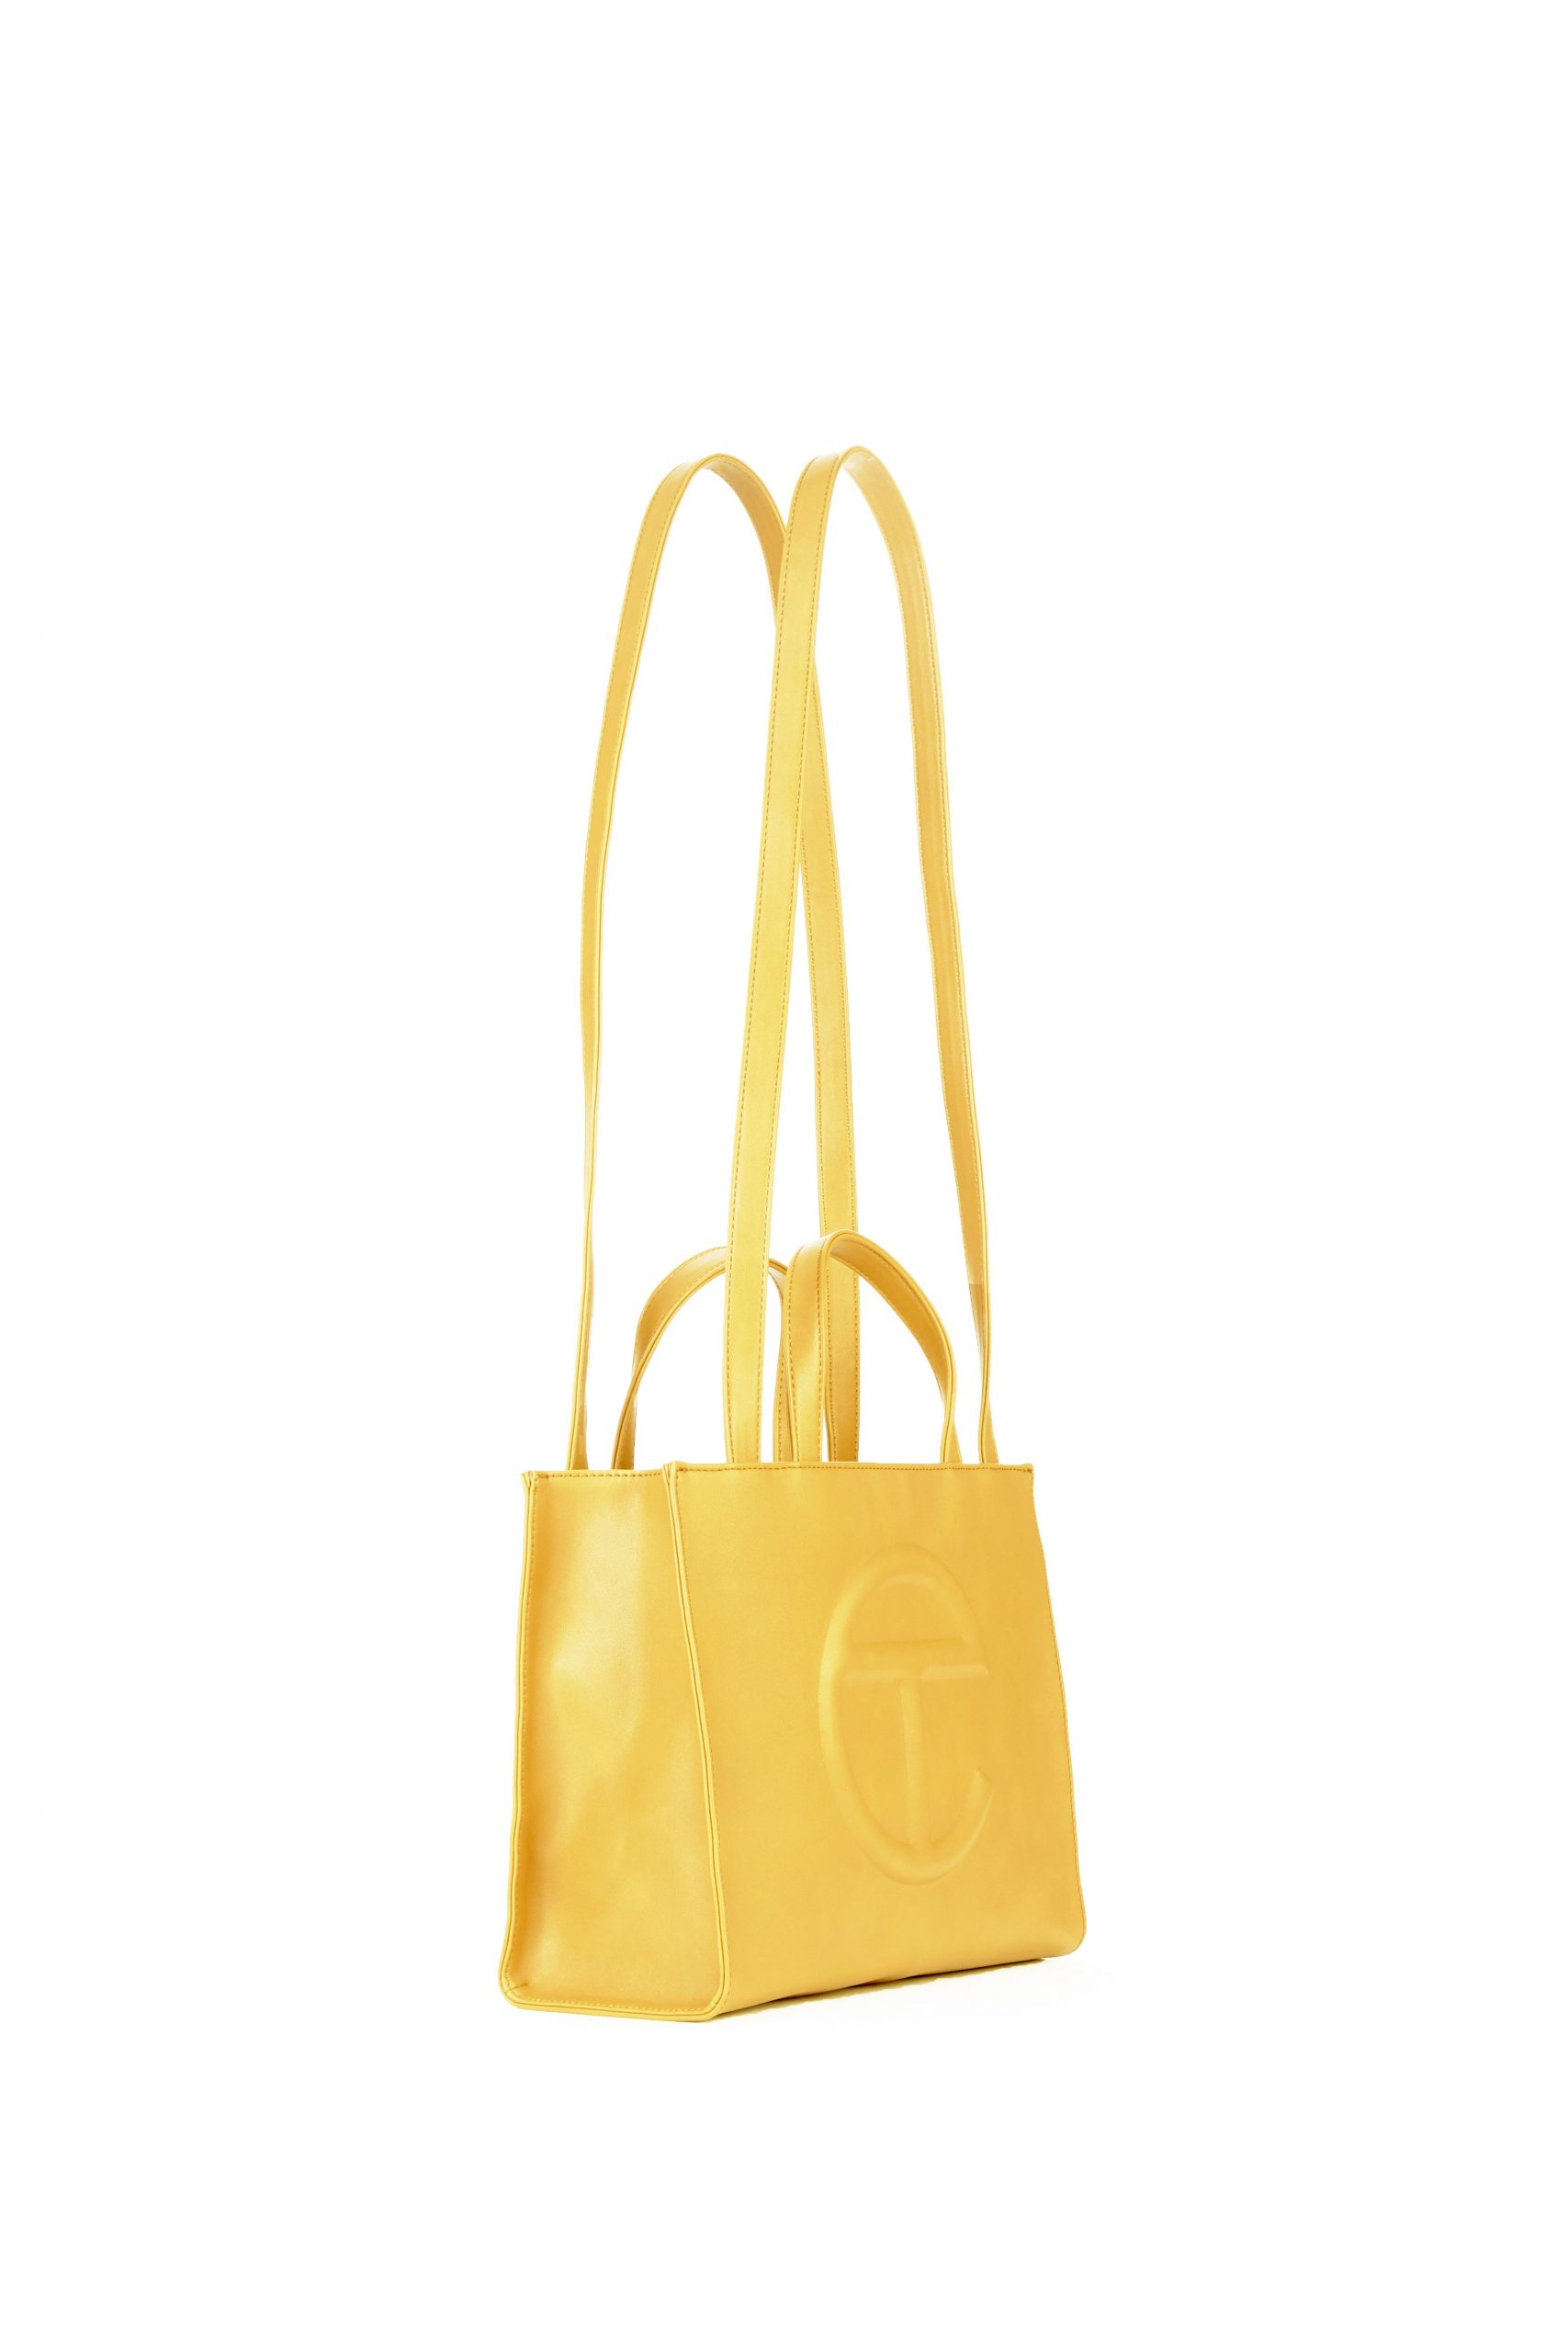 Medium Yellow Shopping Bag